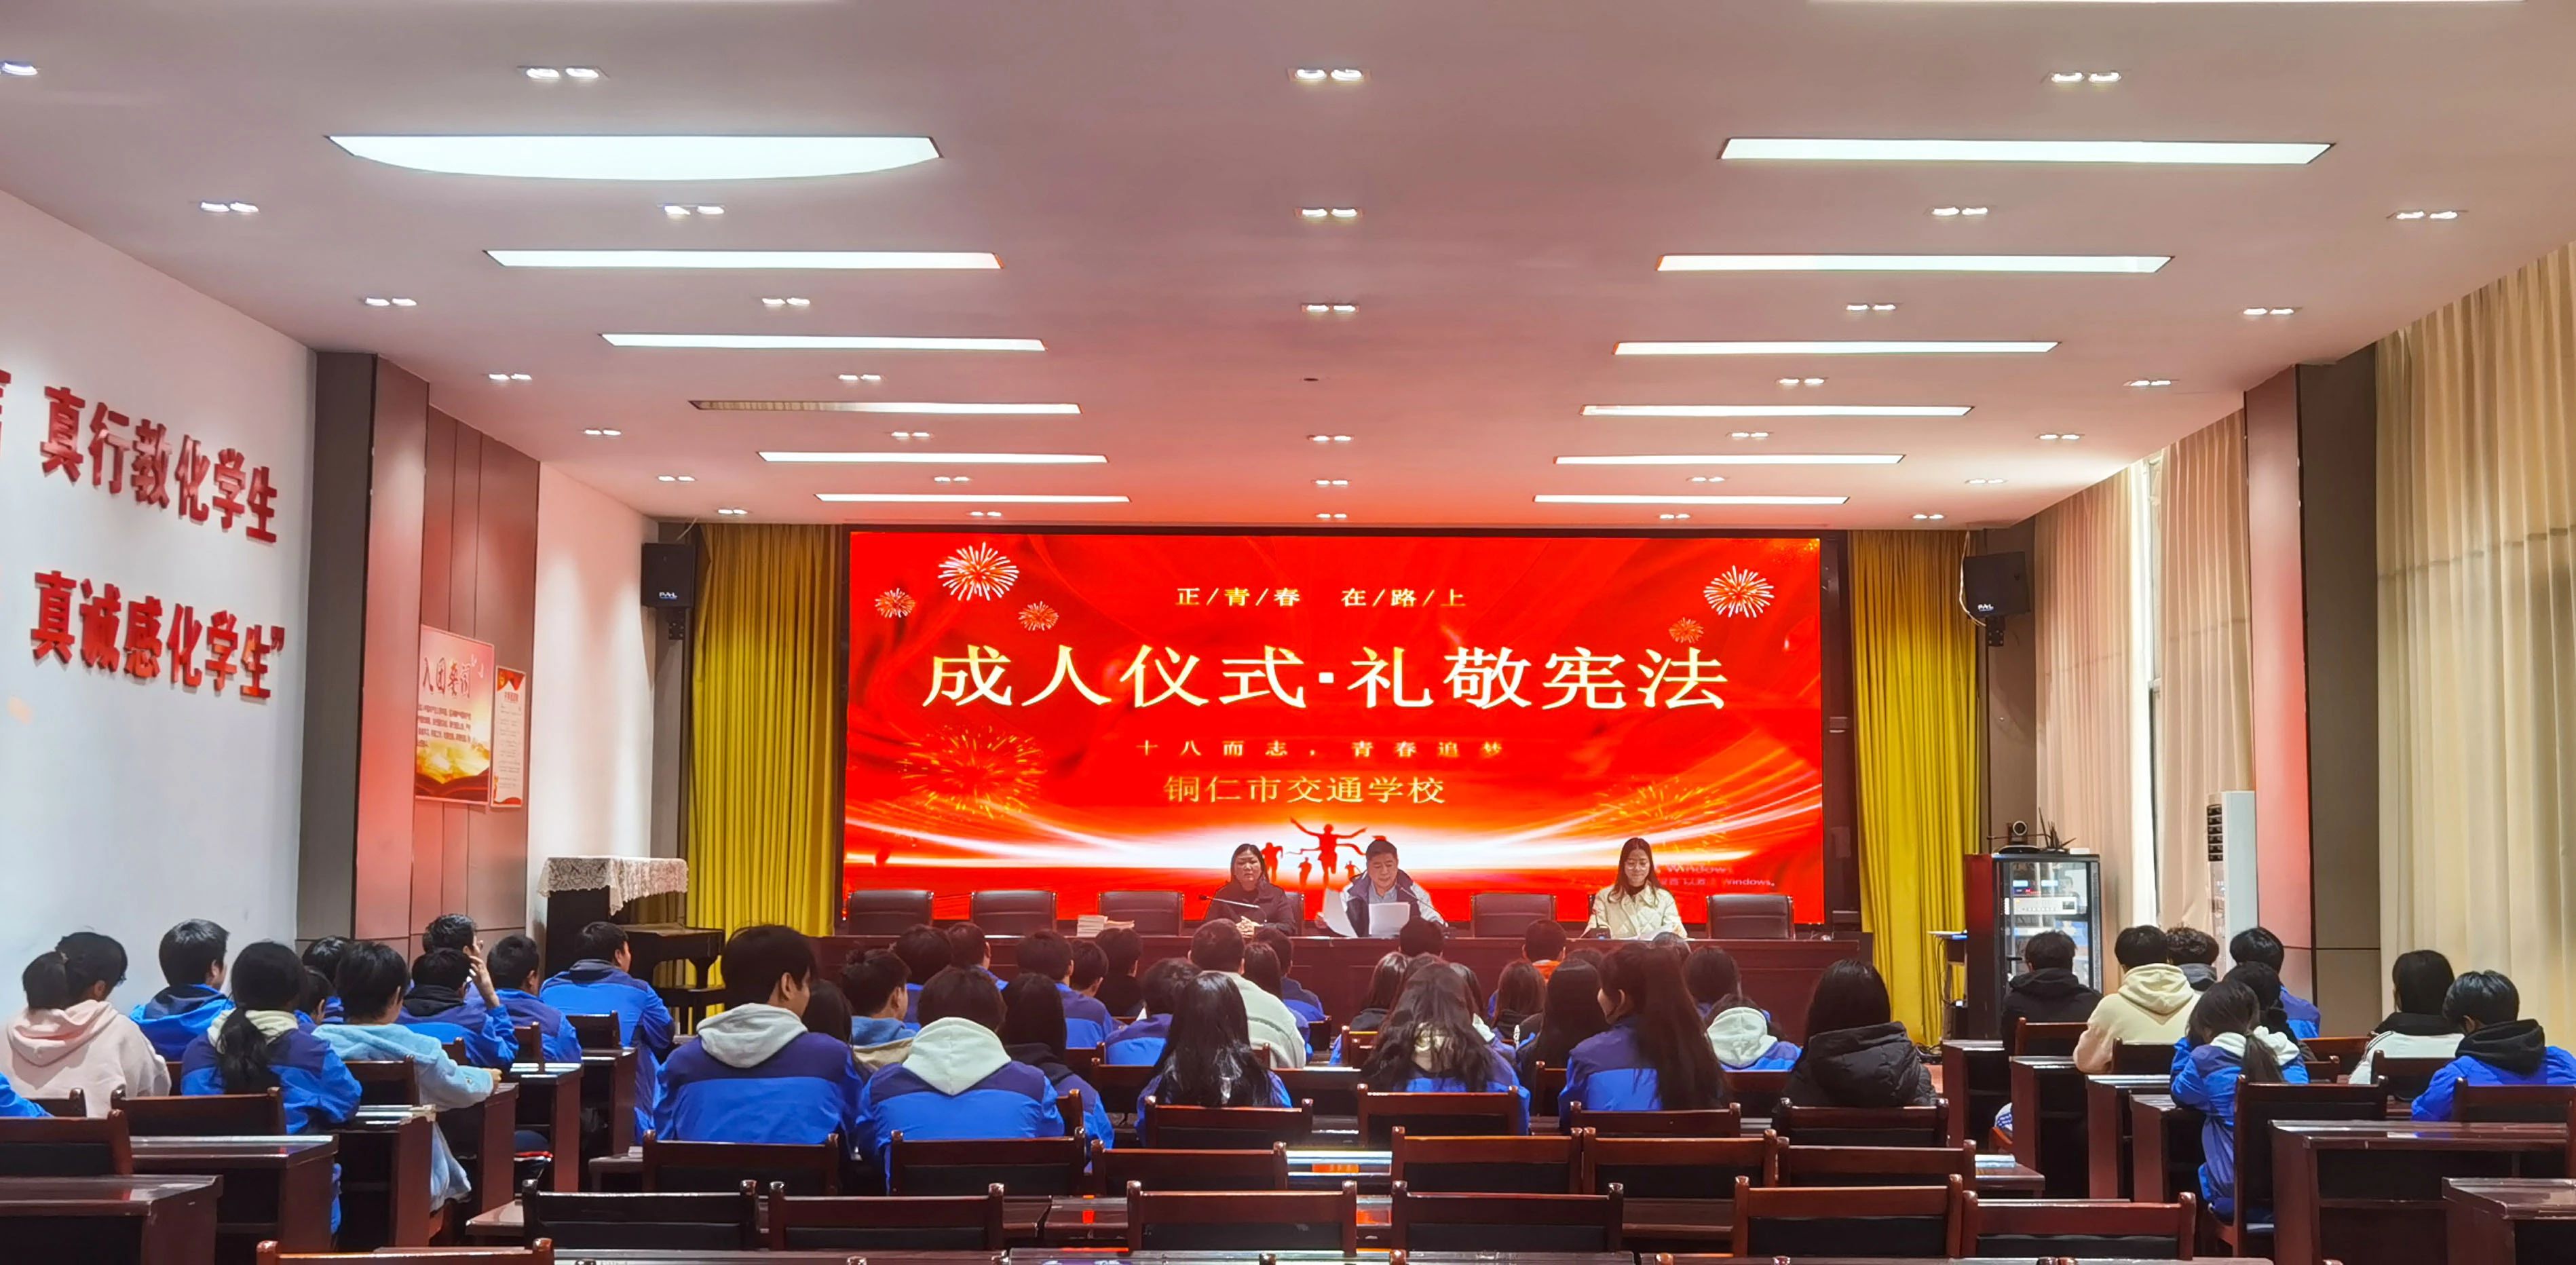 十八而志·青春追梦 | 铜仁市交通学校举行学生成人仪式礼敬宪法